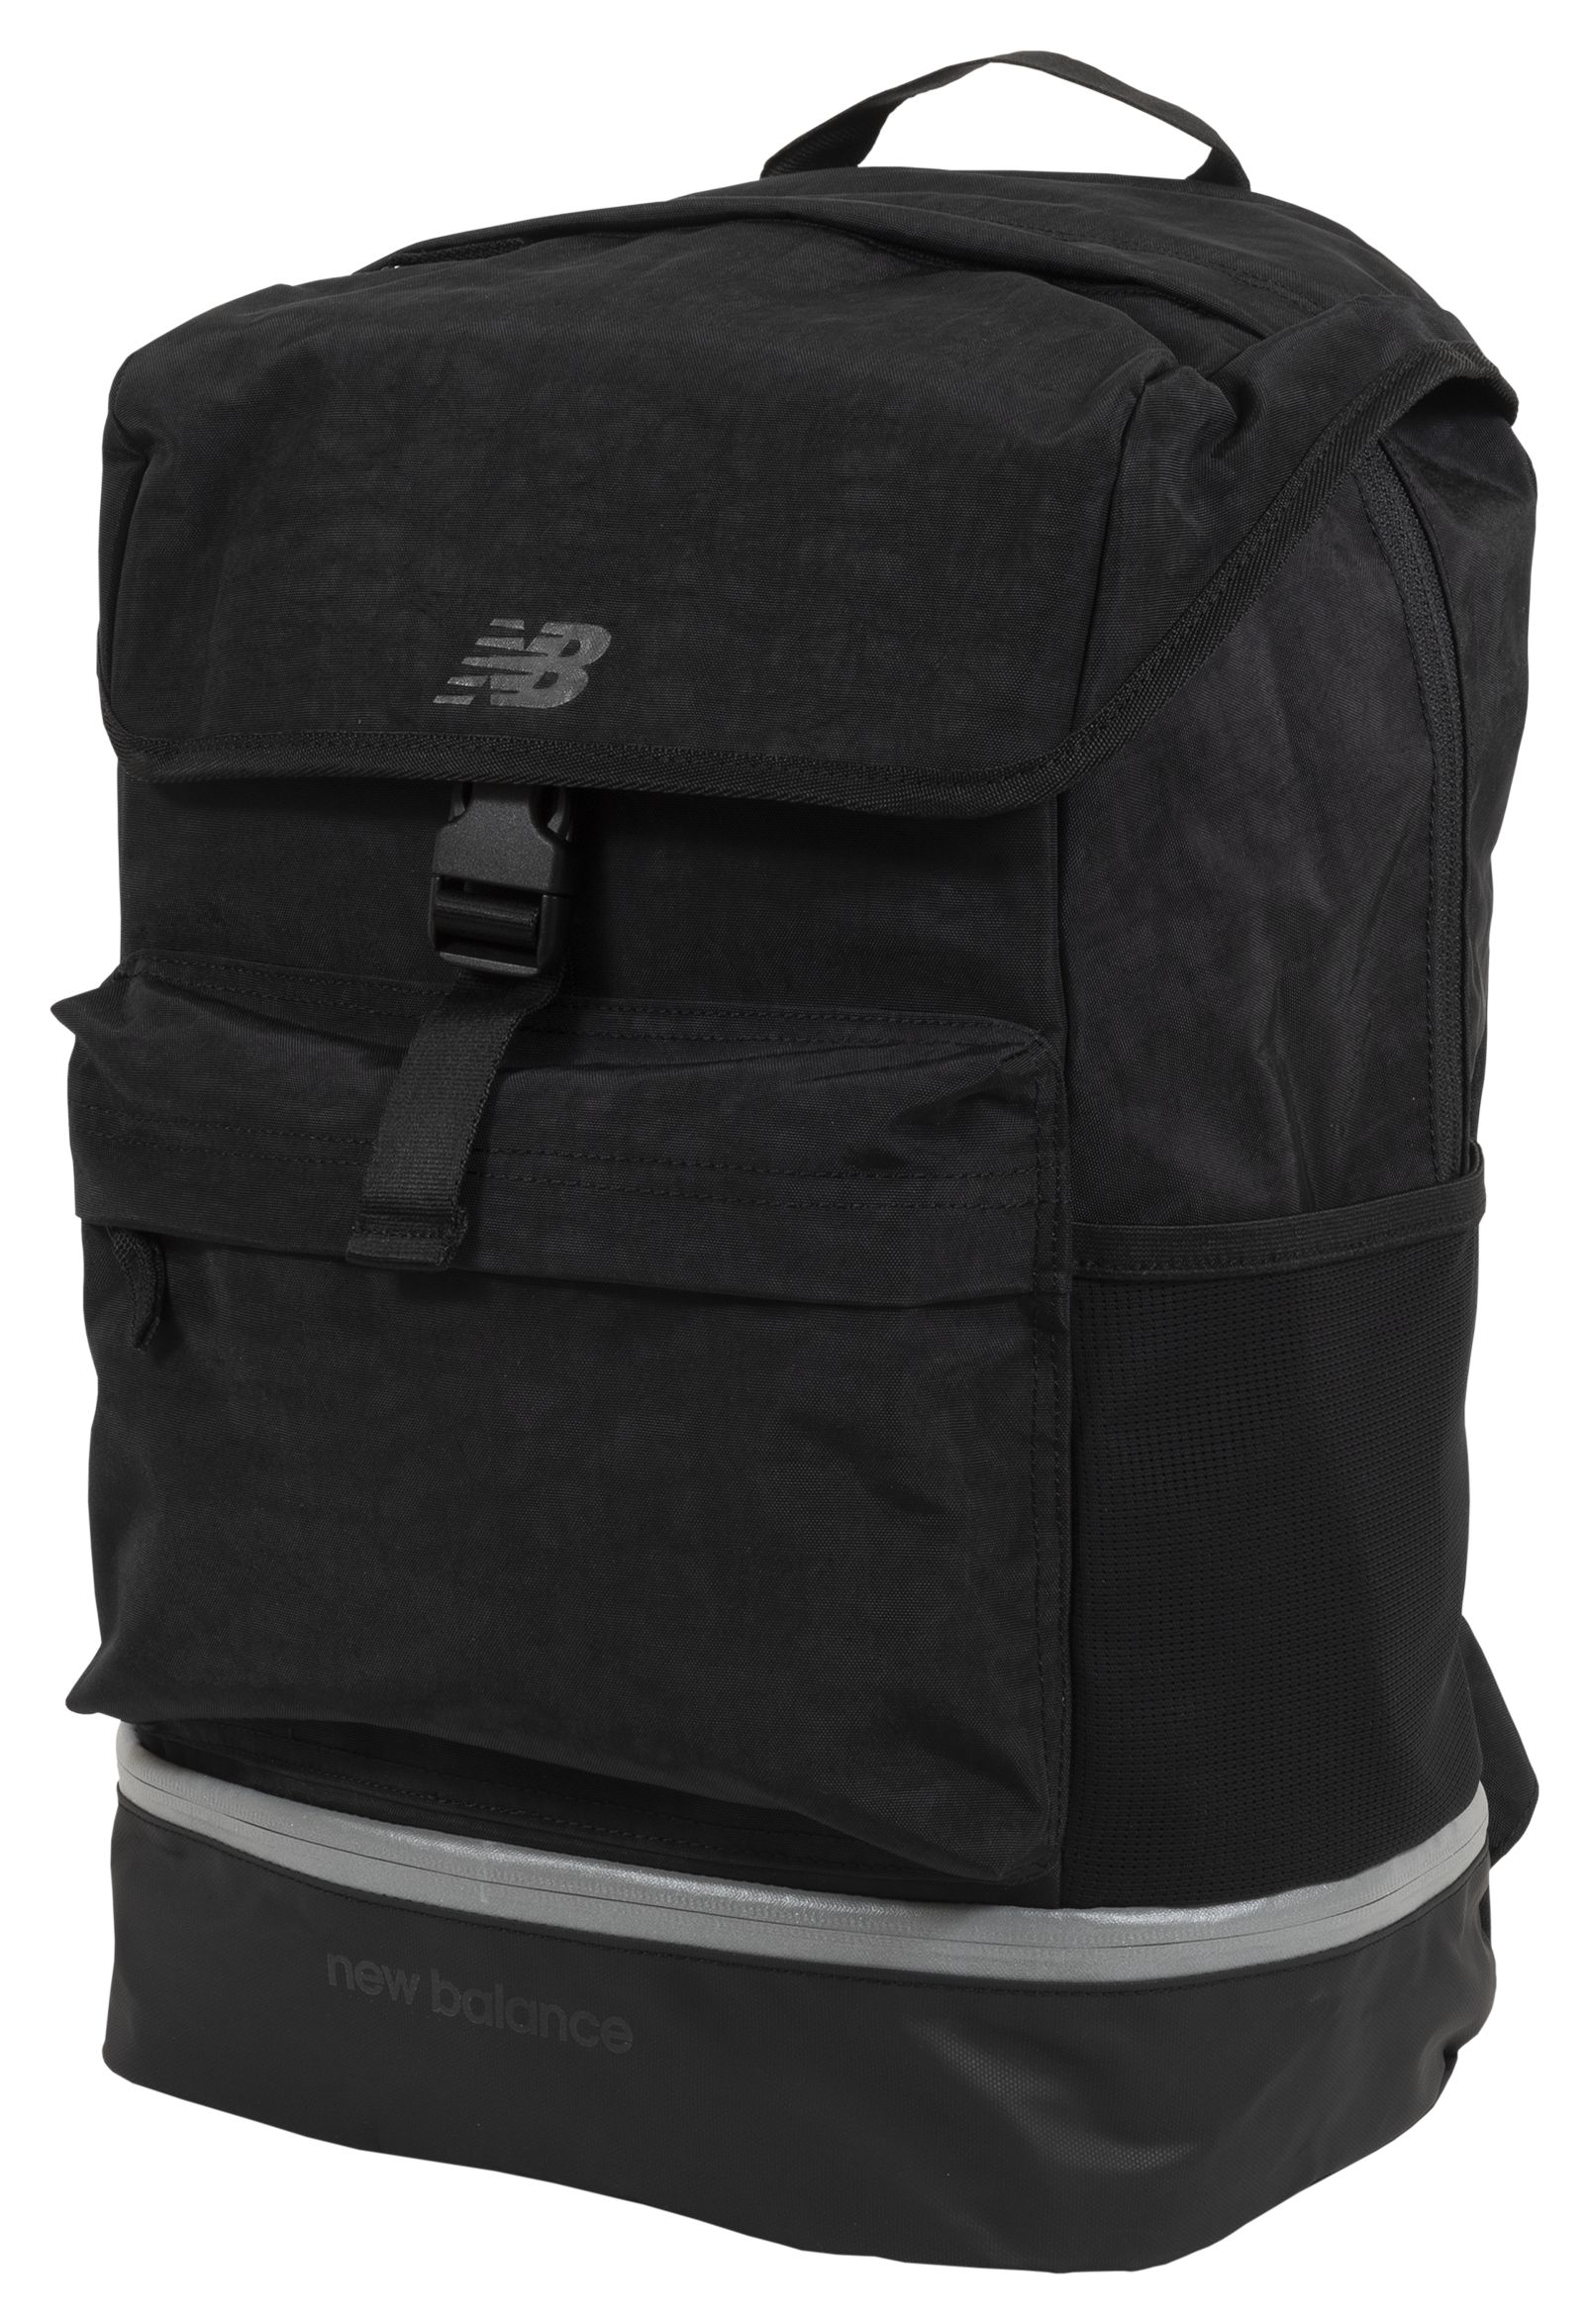 Run Commuter Backpack - New Balance